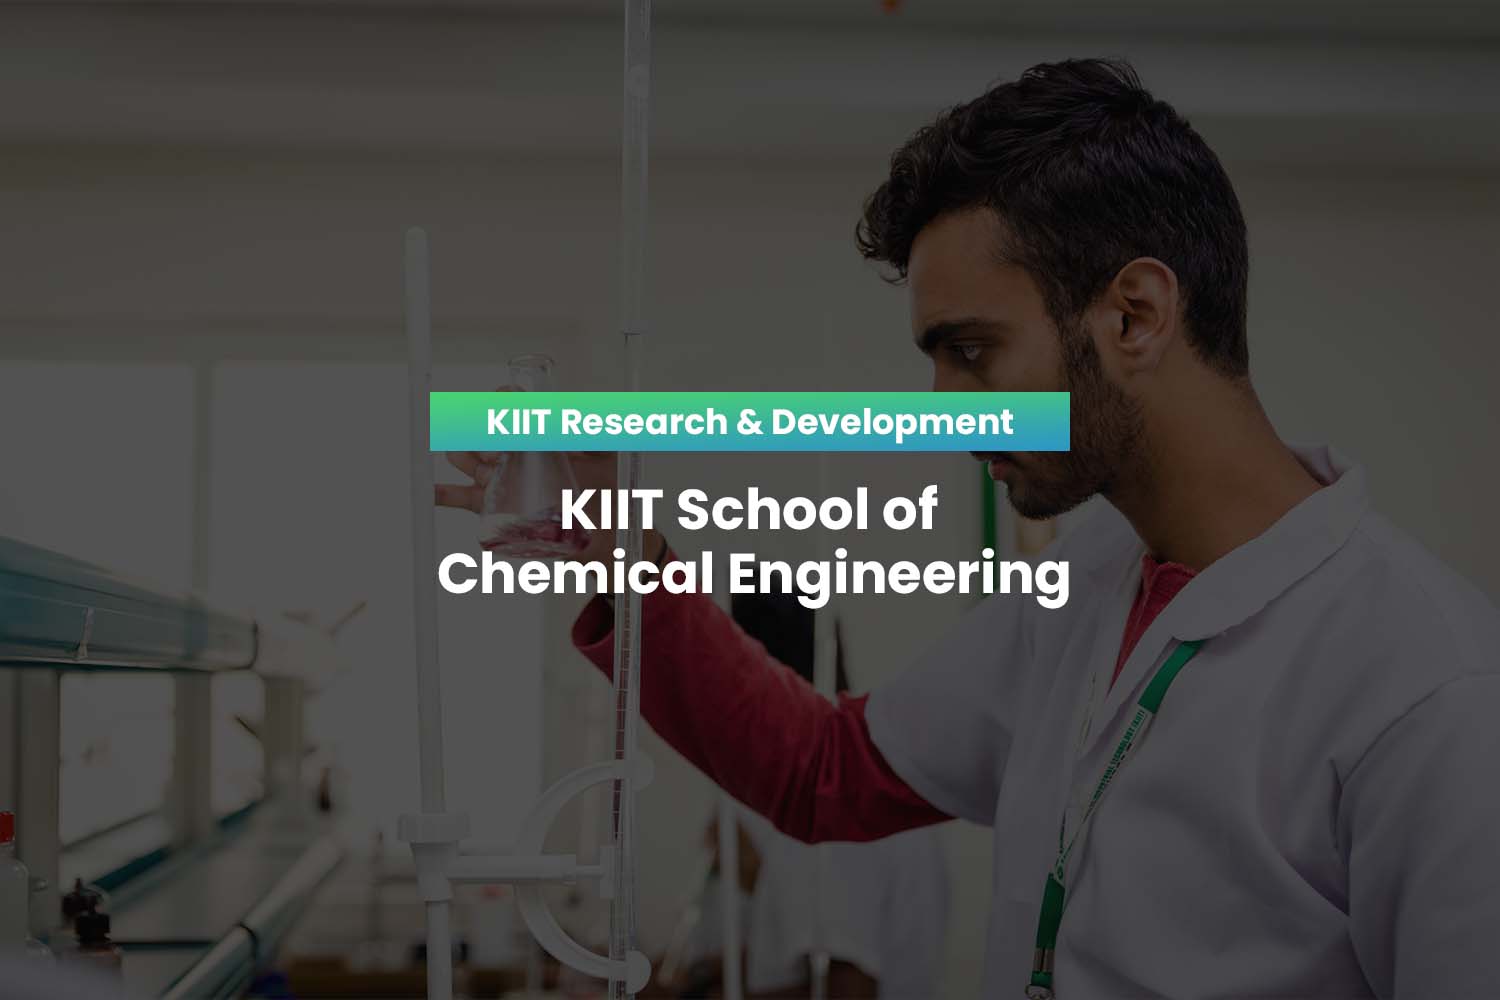 KIIT School of Chemical Engineering